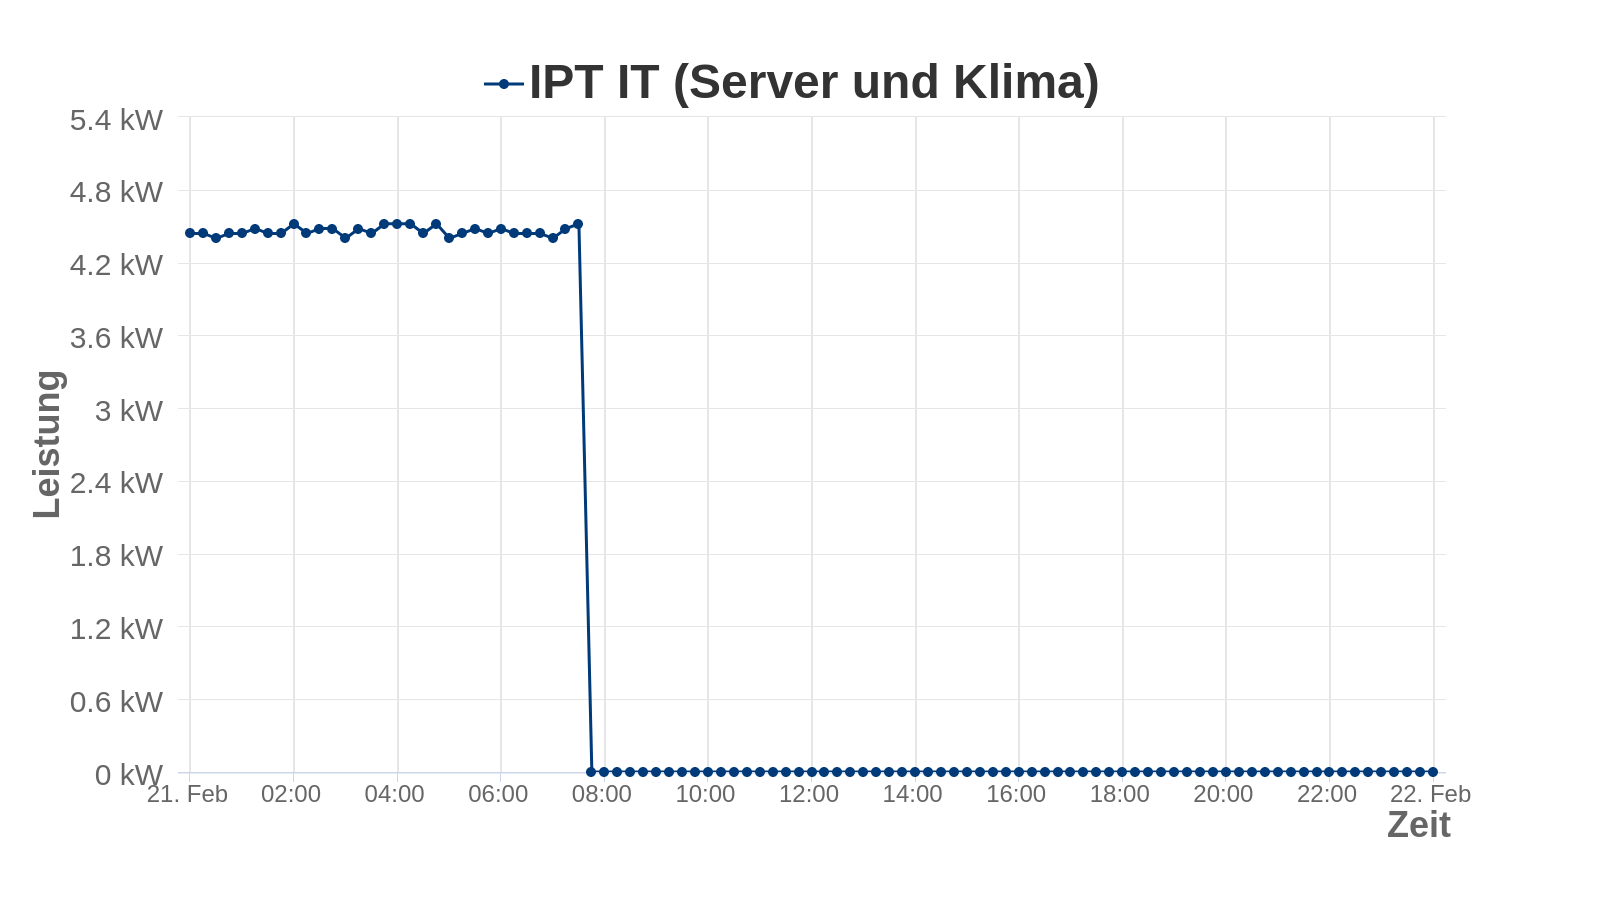 it_server_und_klima aktuell nicht verfügbar